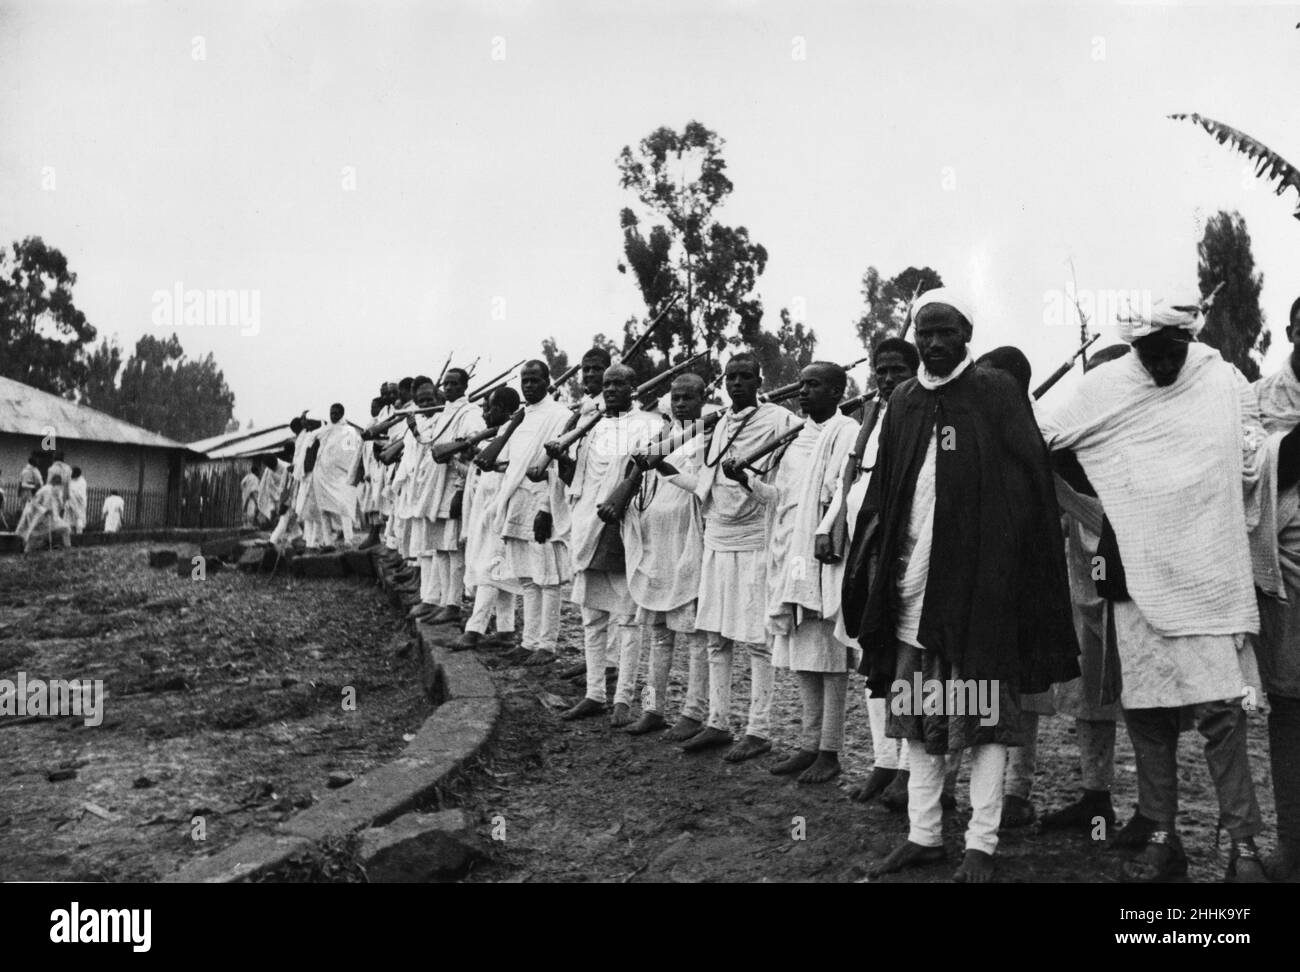 Guerre Abyssinienne septembre 1935.tribesmen et Chieftains arrivant à Addis-Abeba pour s'y engager de loyauté envers l'empereur Haile Selassie après l'invasion de l'Éthiopie par les forces italiennes. Banque D'Images